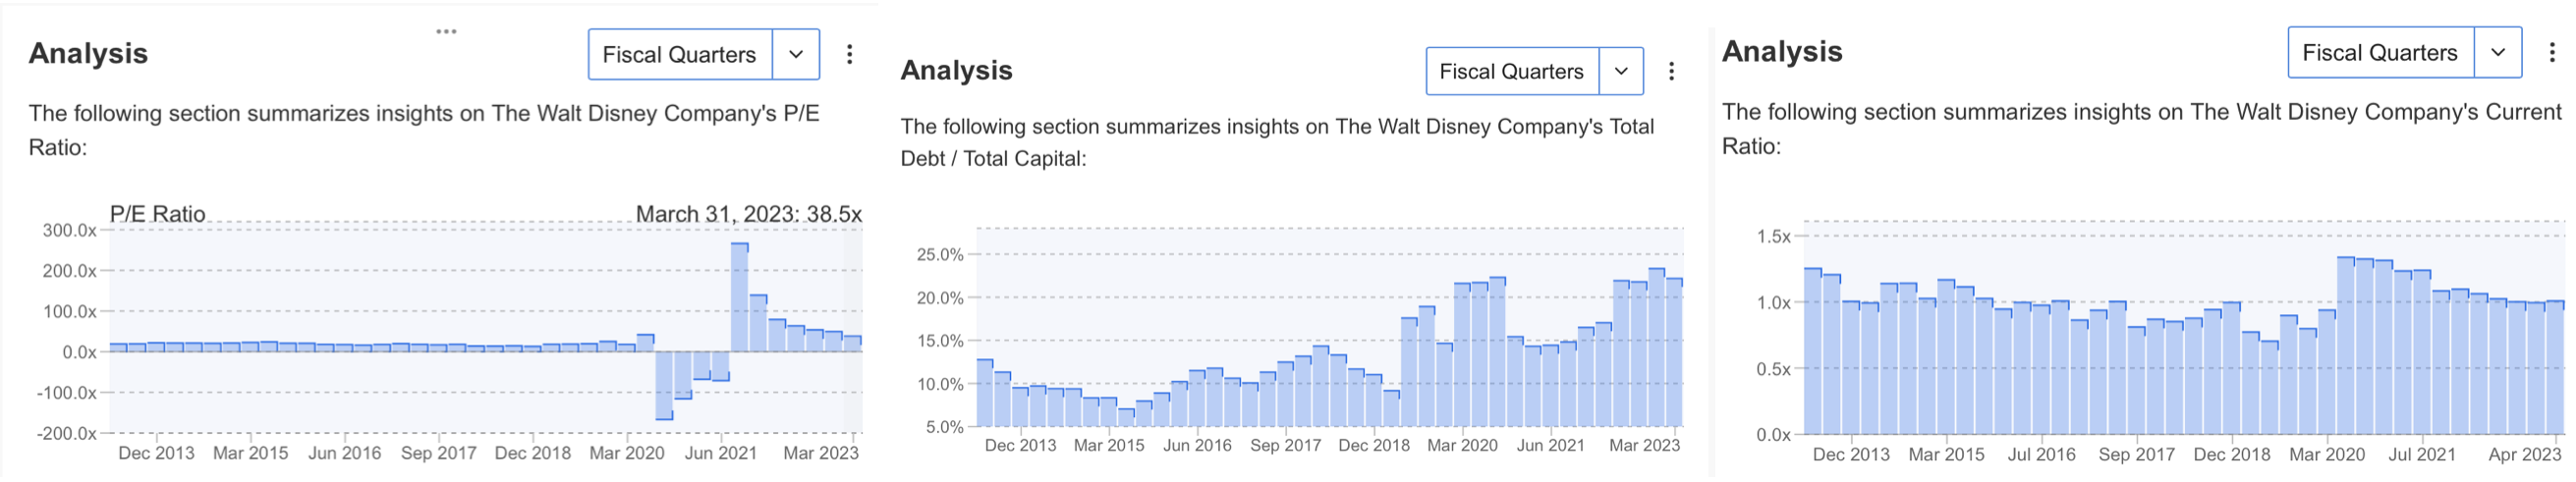 디즈니의 주가수익비율, 부채자본비율